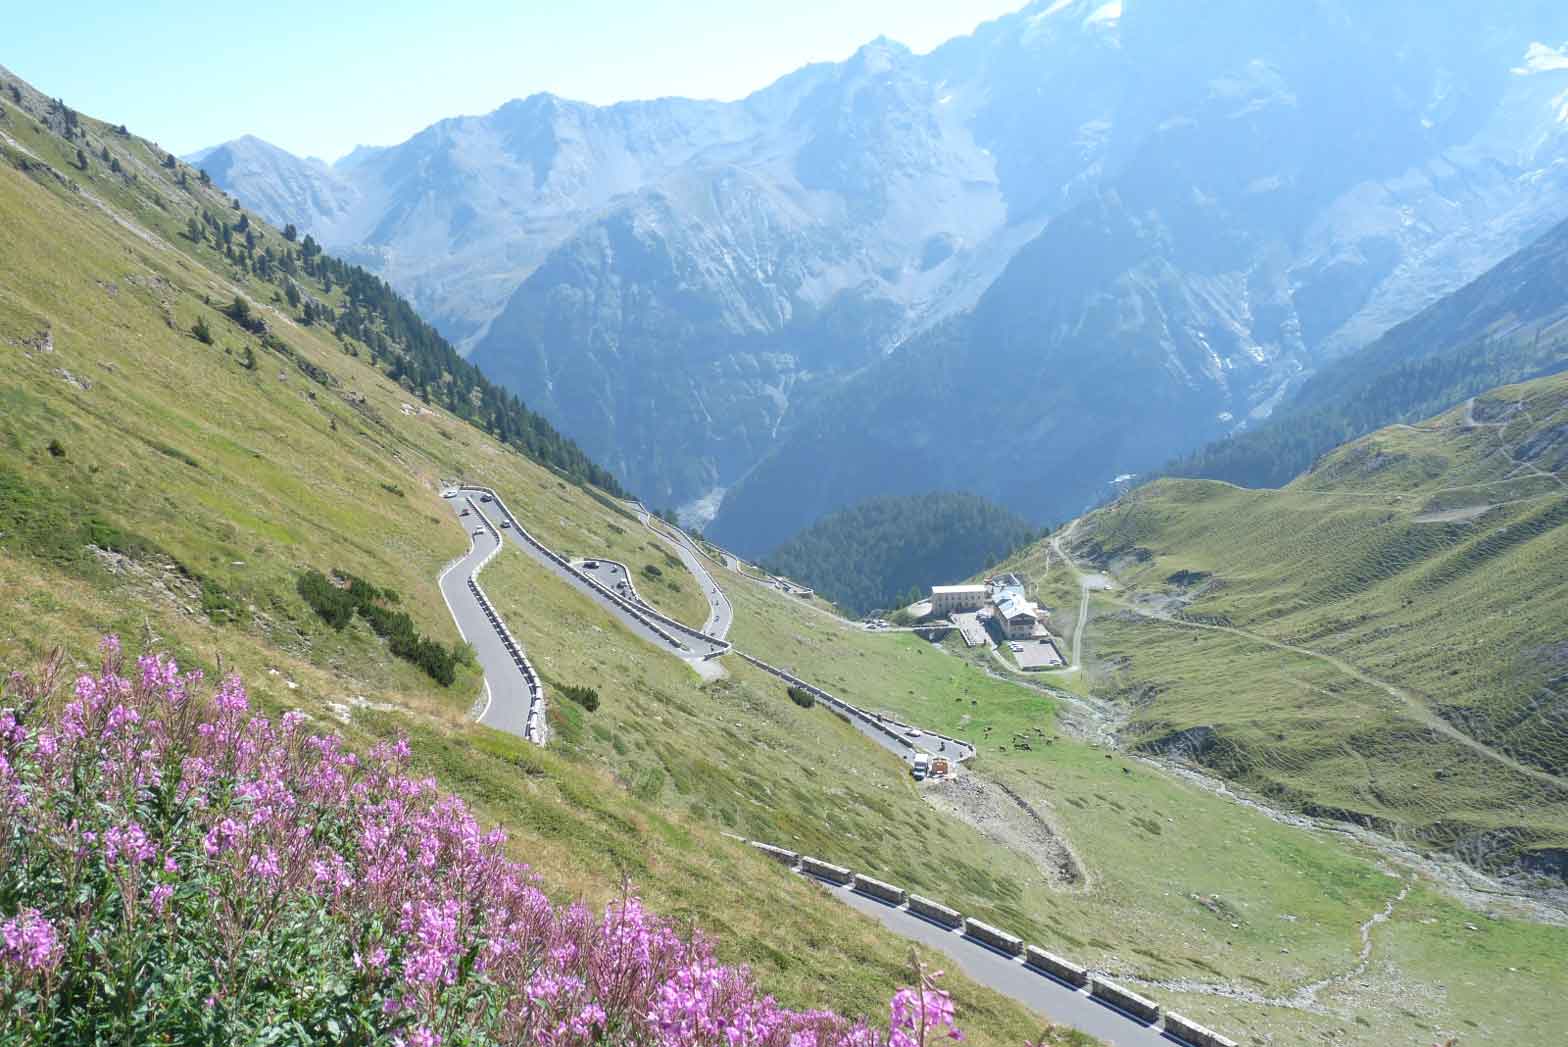 The Stelvio Pass panorama